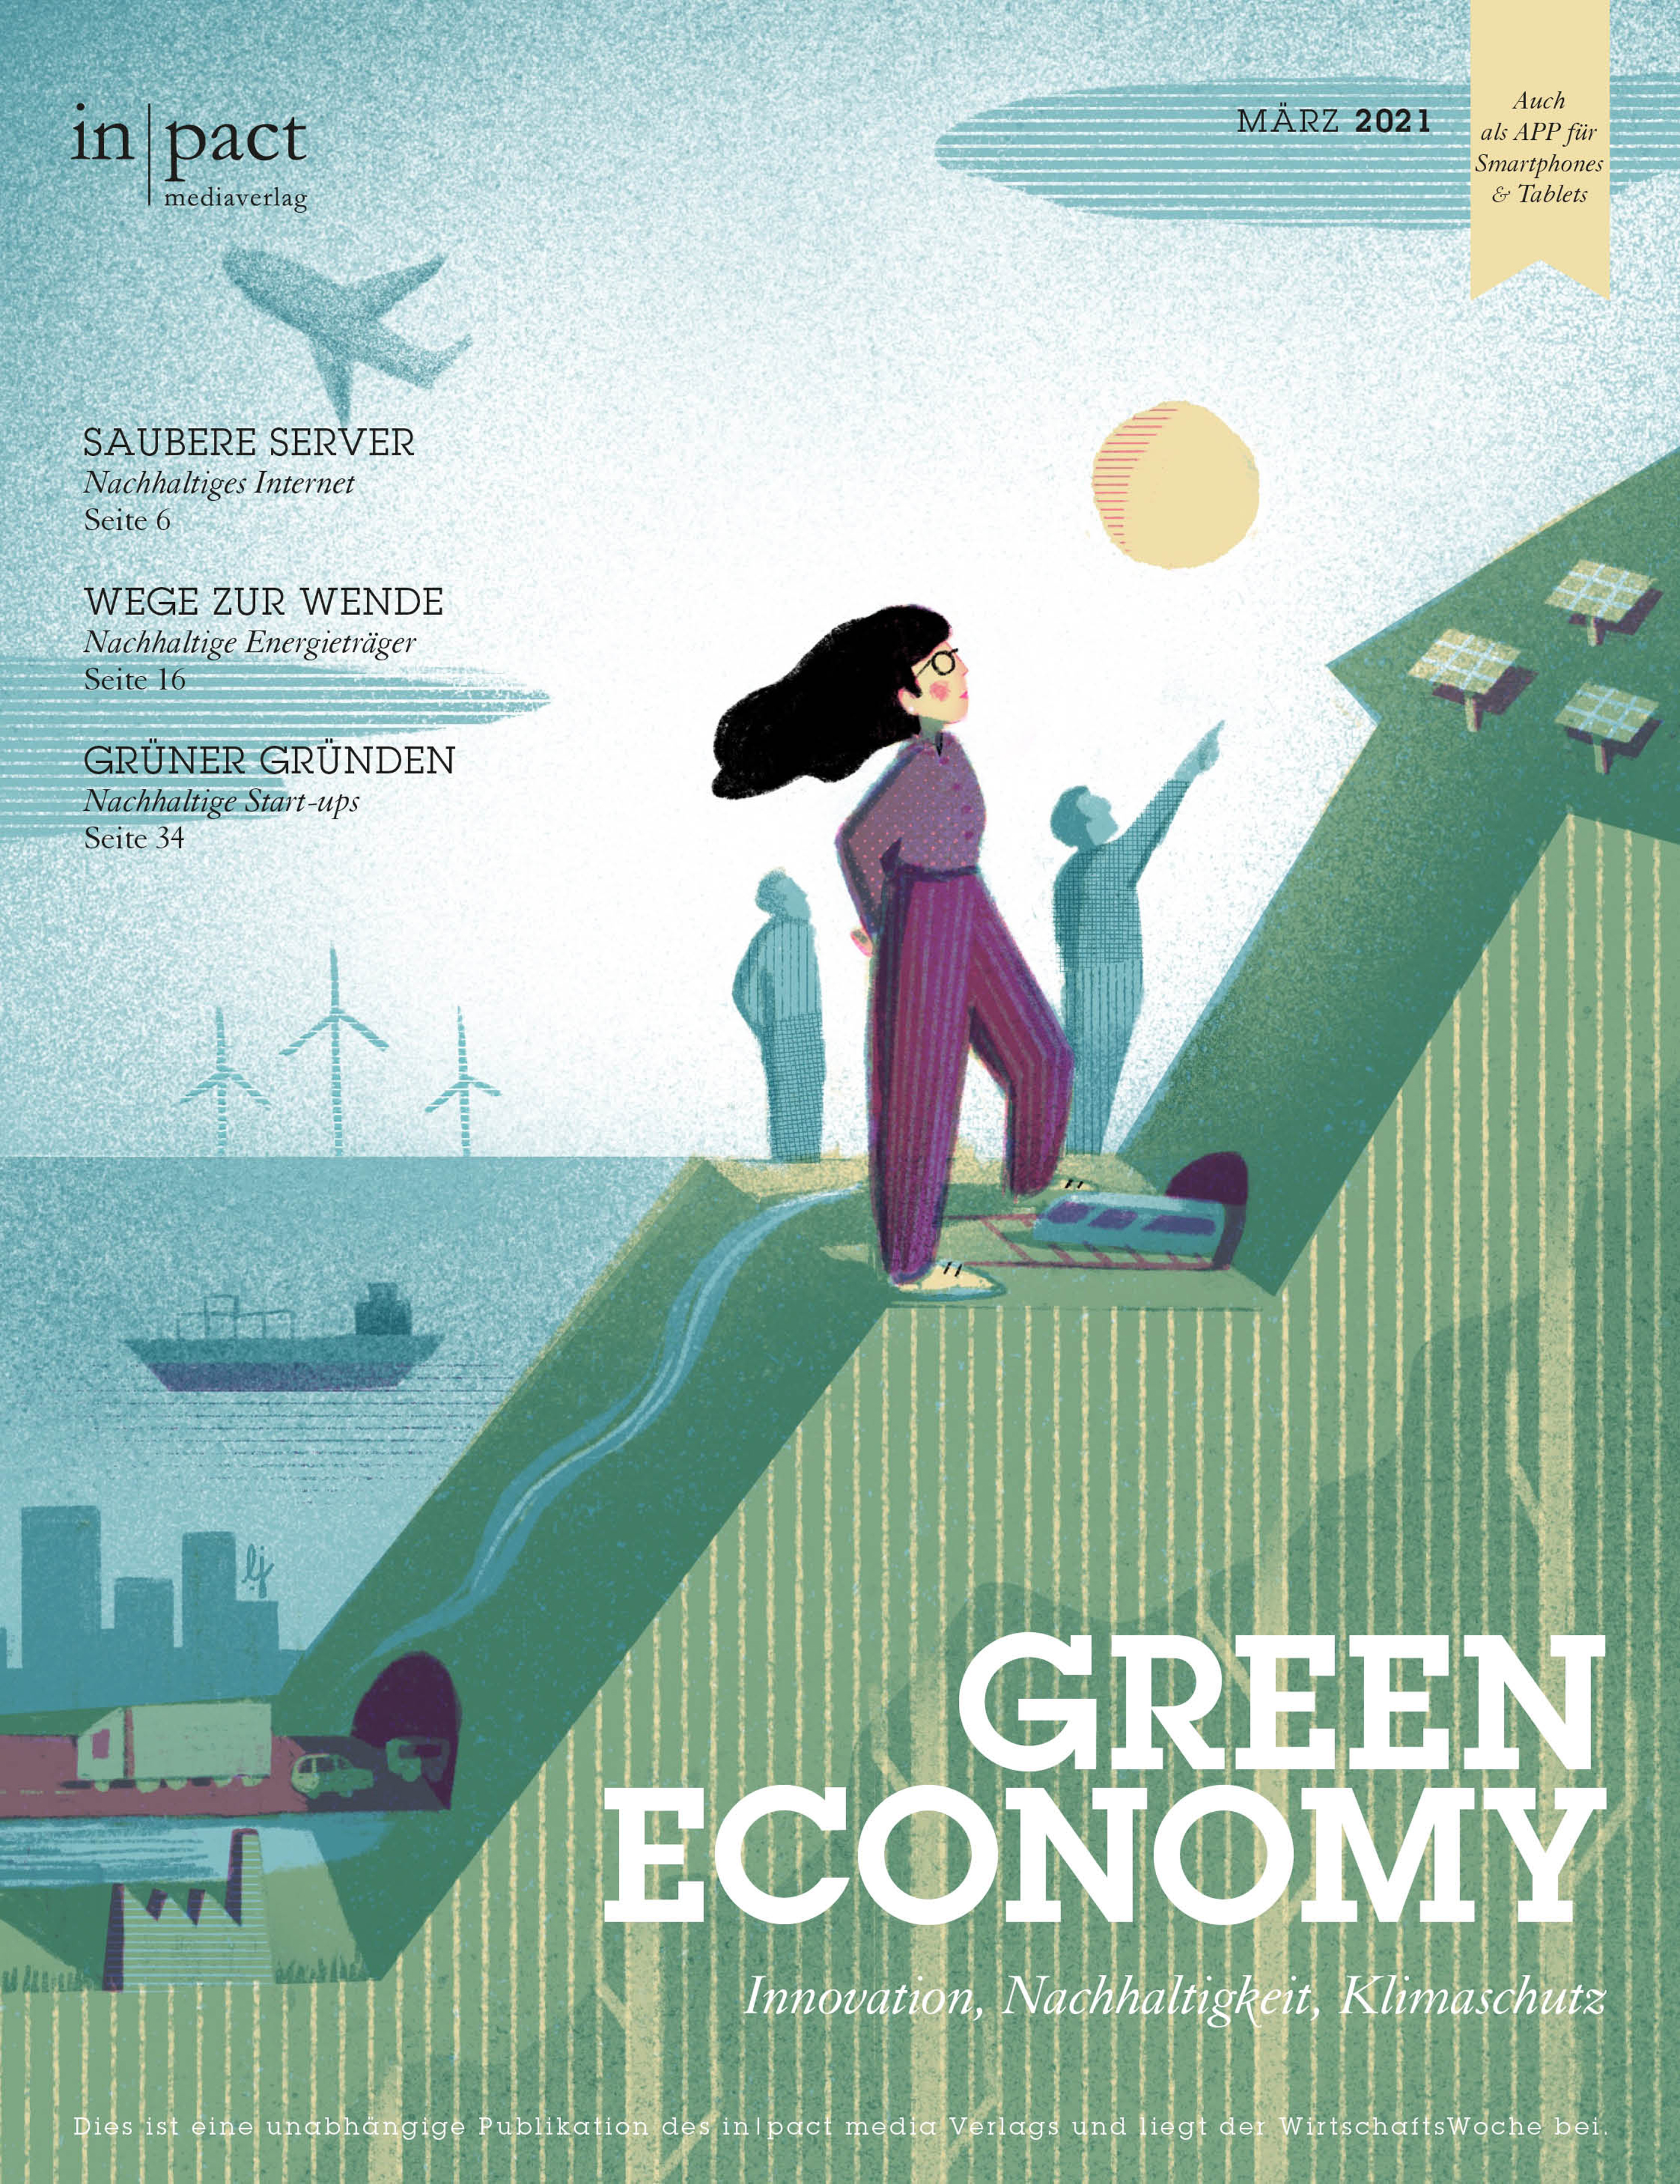 GREEN ECONOMY – Innovation, Nachhaltigkeit, Klimaschutz